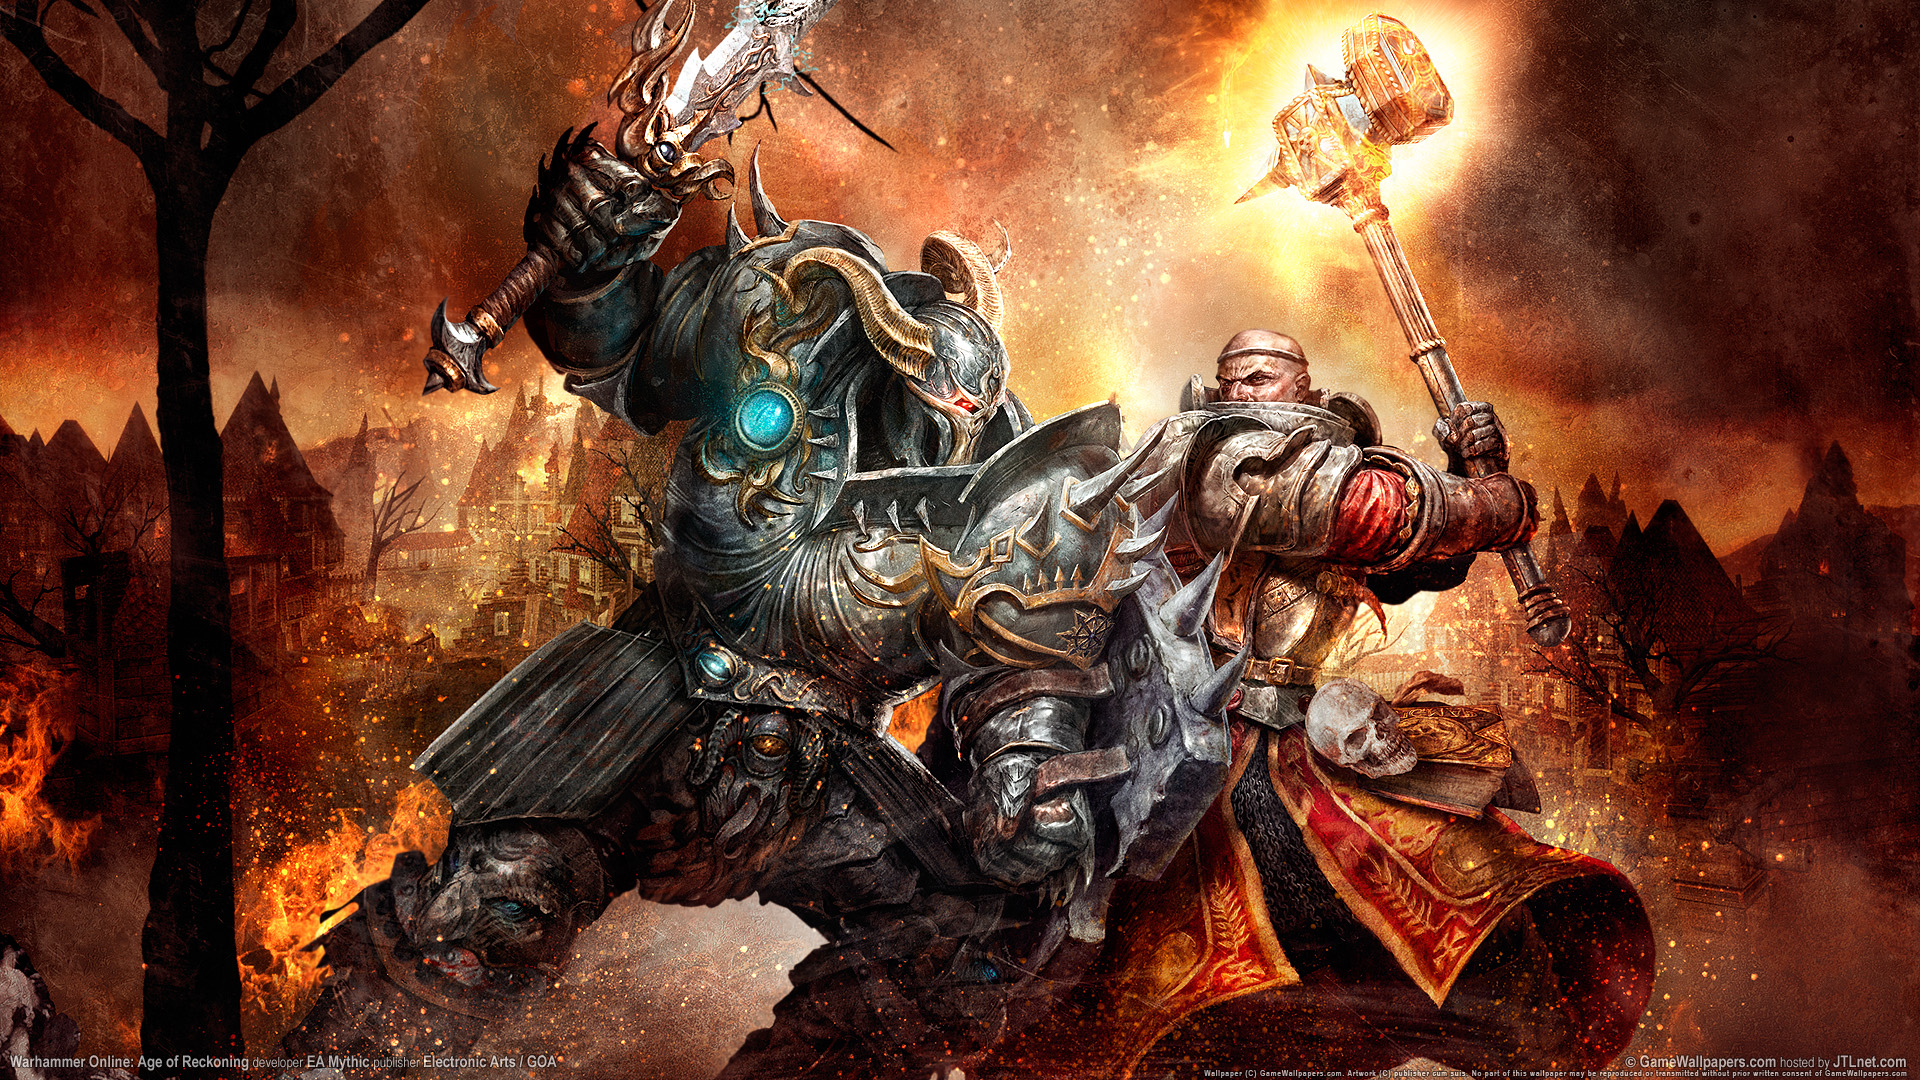 Скачать обои бесплатно Видеоигры, Warhammer Online: Эпоха Расплаты картинка на рабочий стол ПК